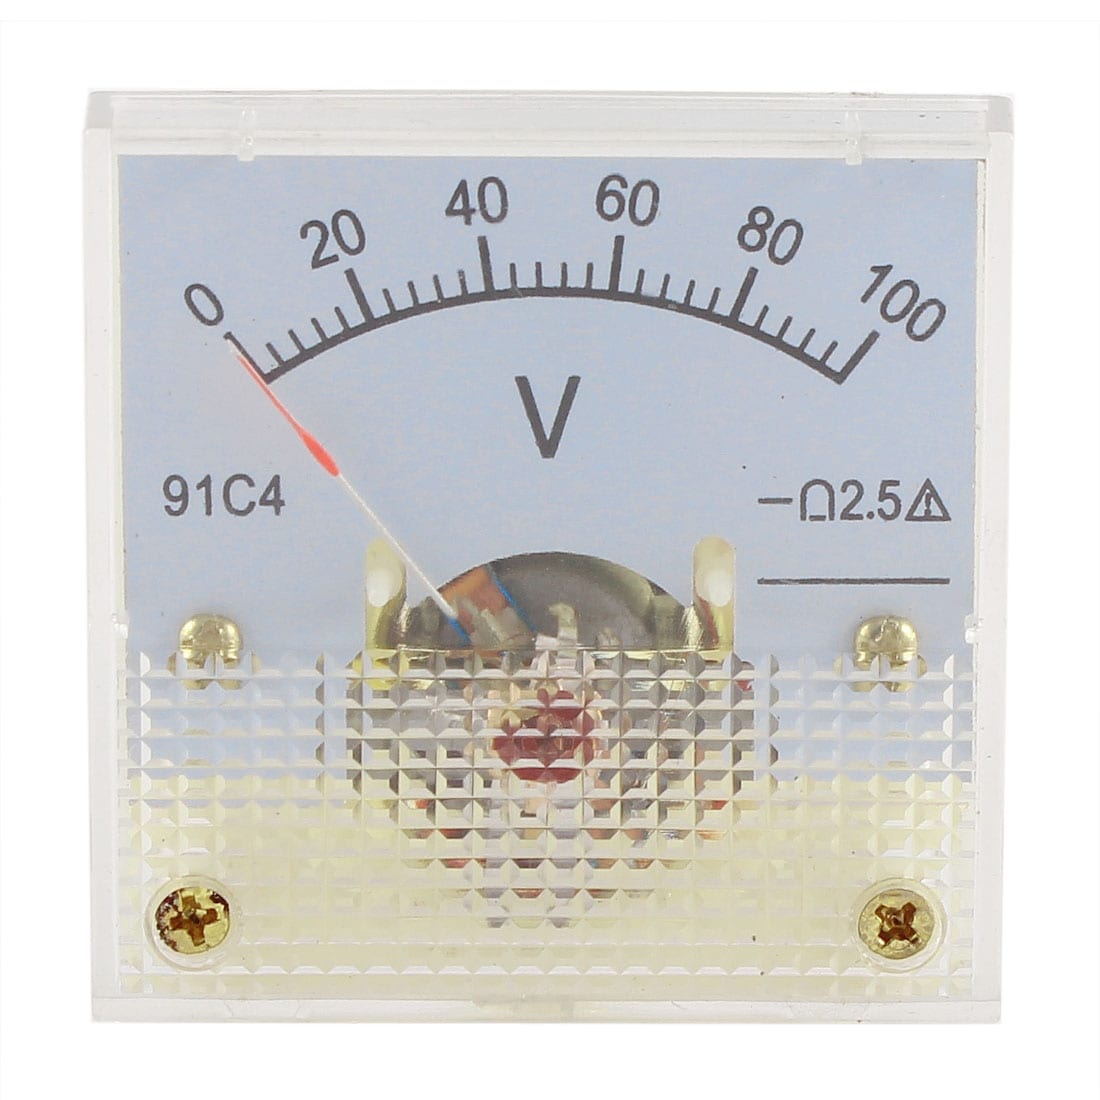 91C4 DC 0-100V Analog Panel Voltmeter Voltage Meter Measuring